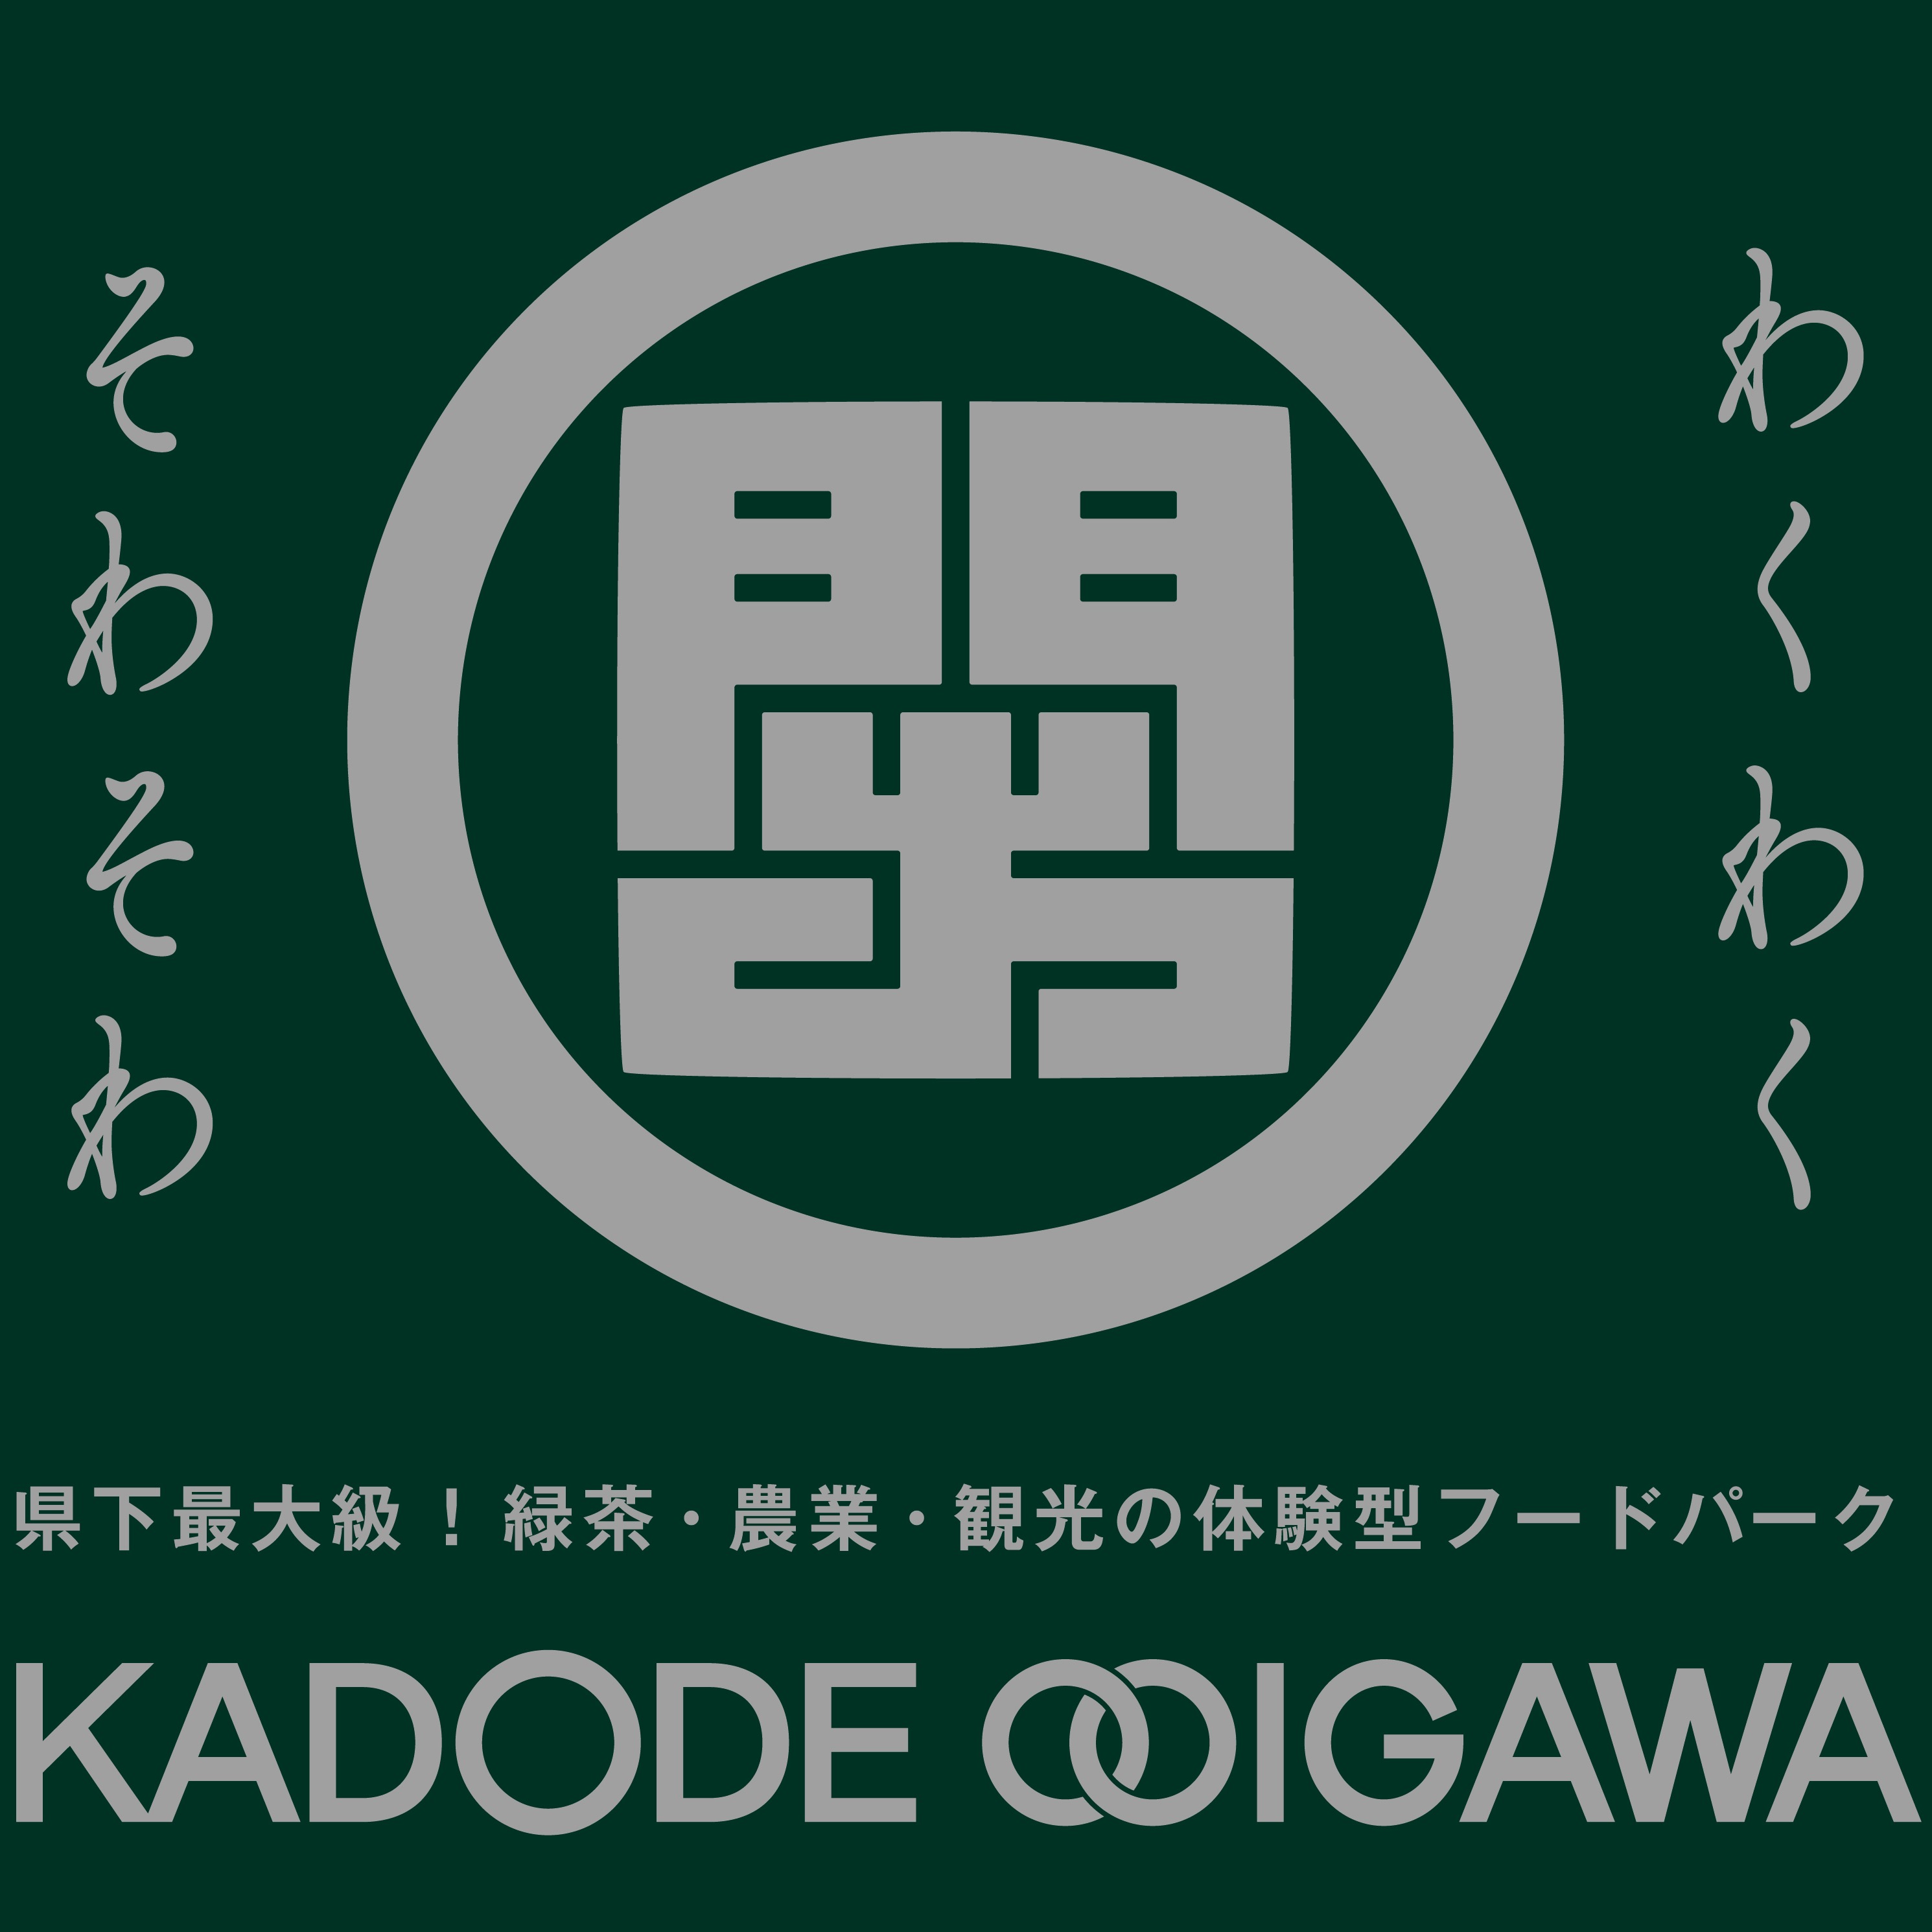 ©︎KADODE OOIGAWA・トコナツ歩兵団2020